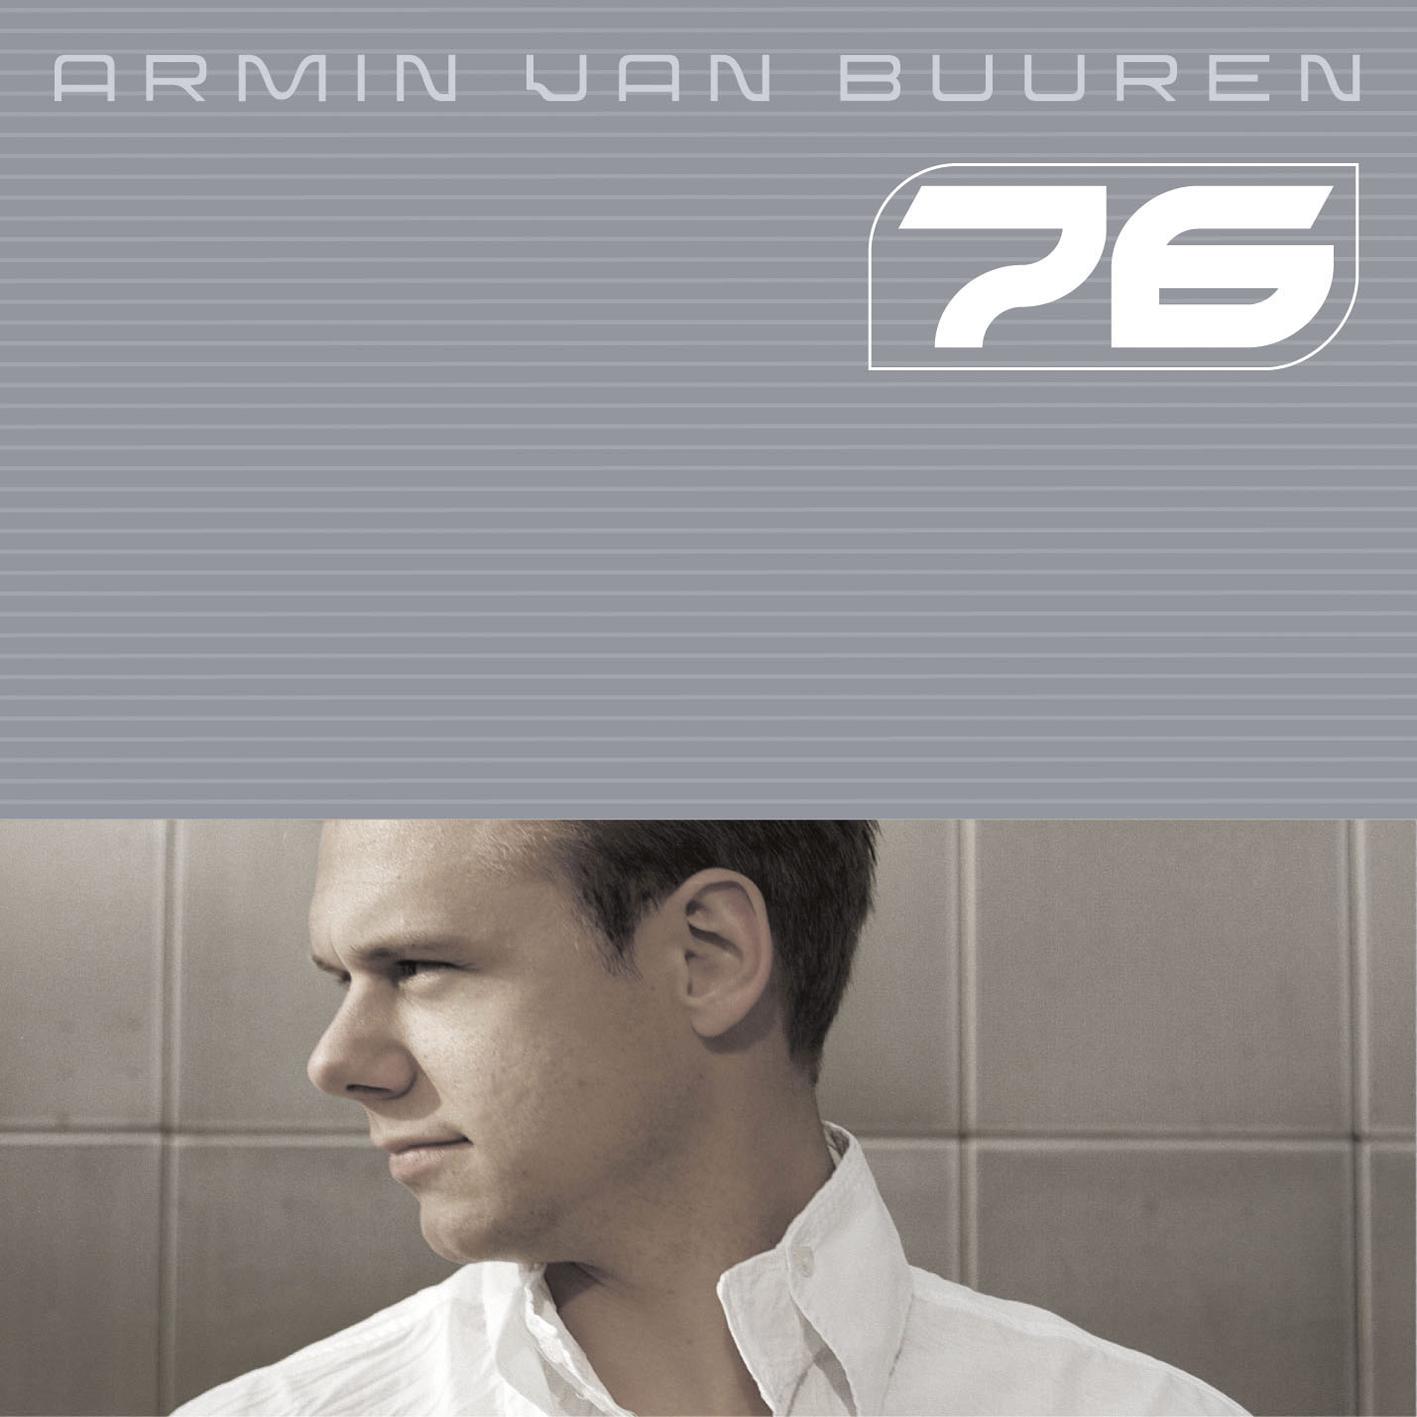 Armin van Buuren - Stay